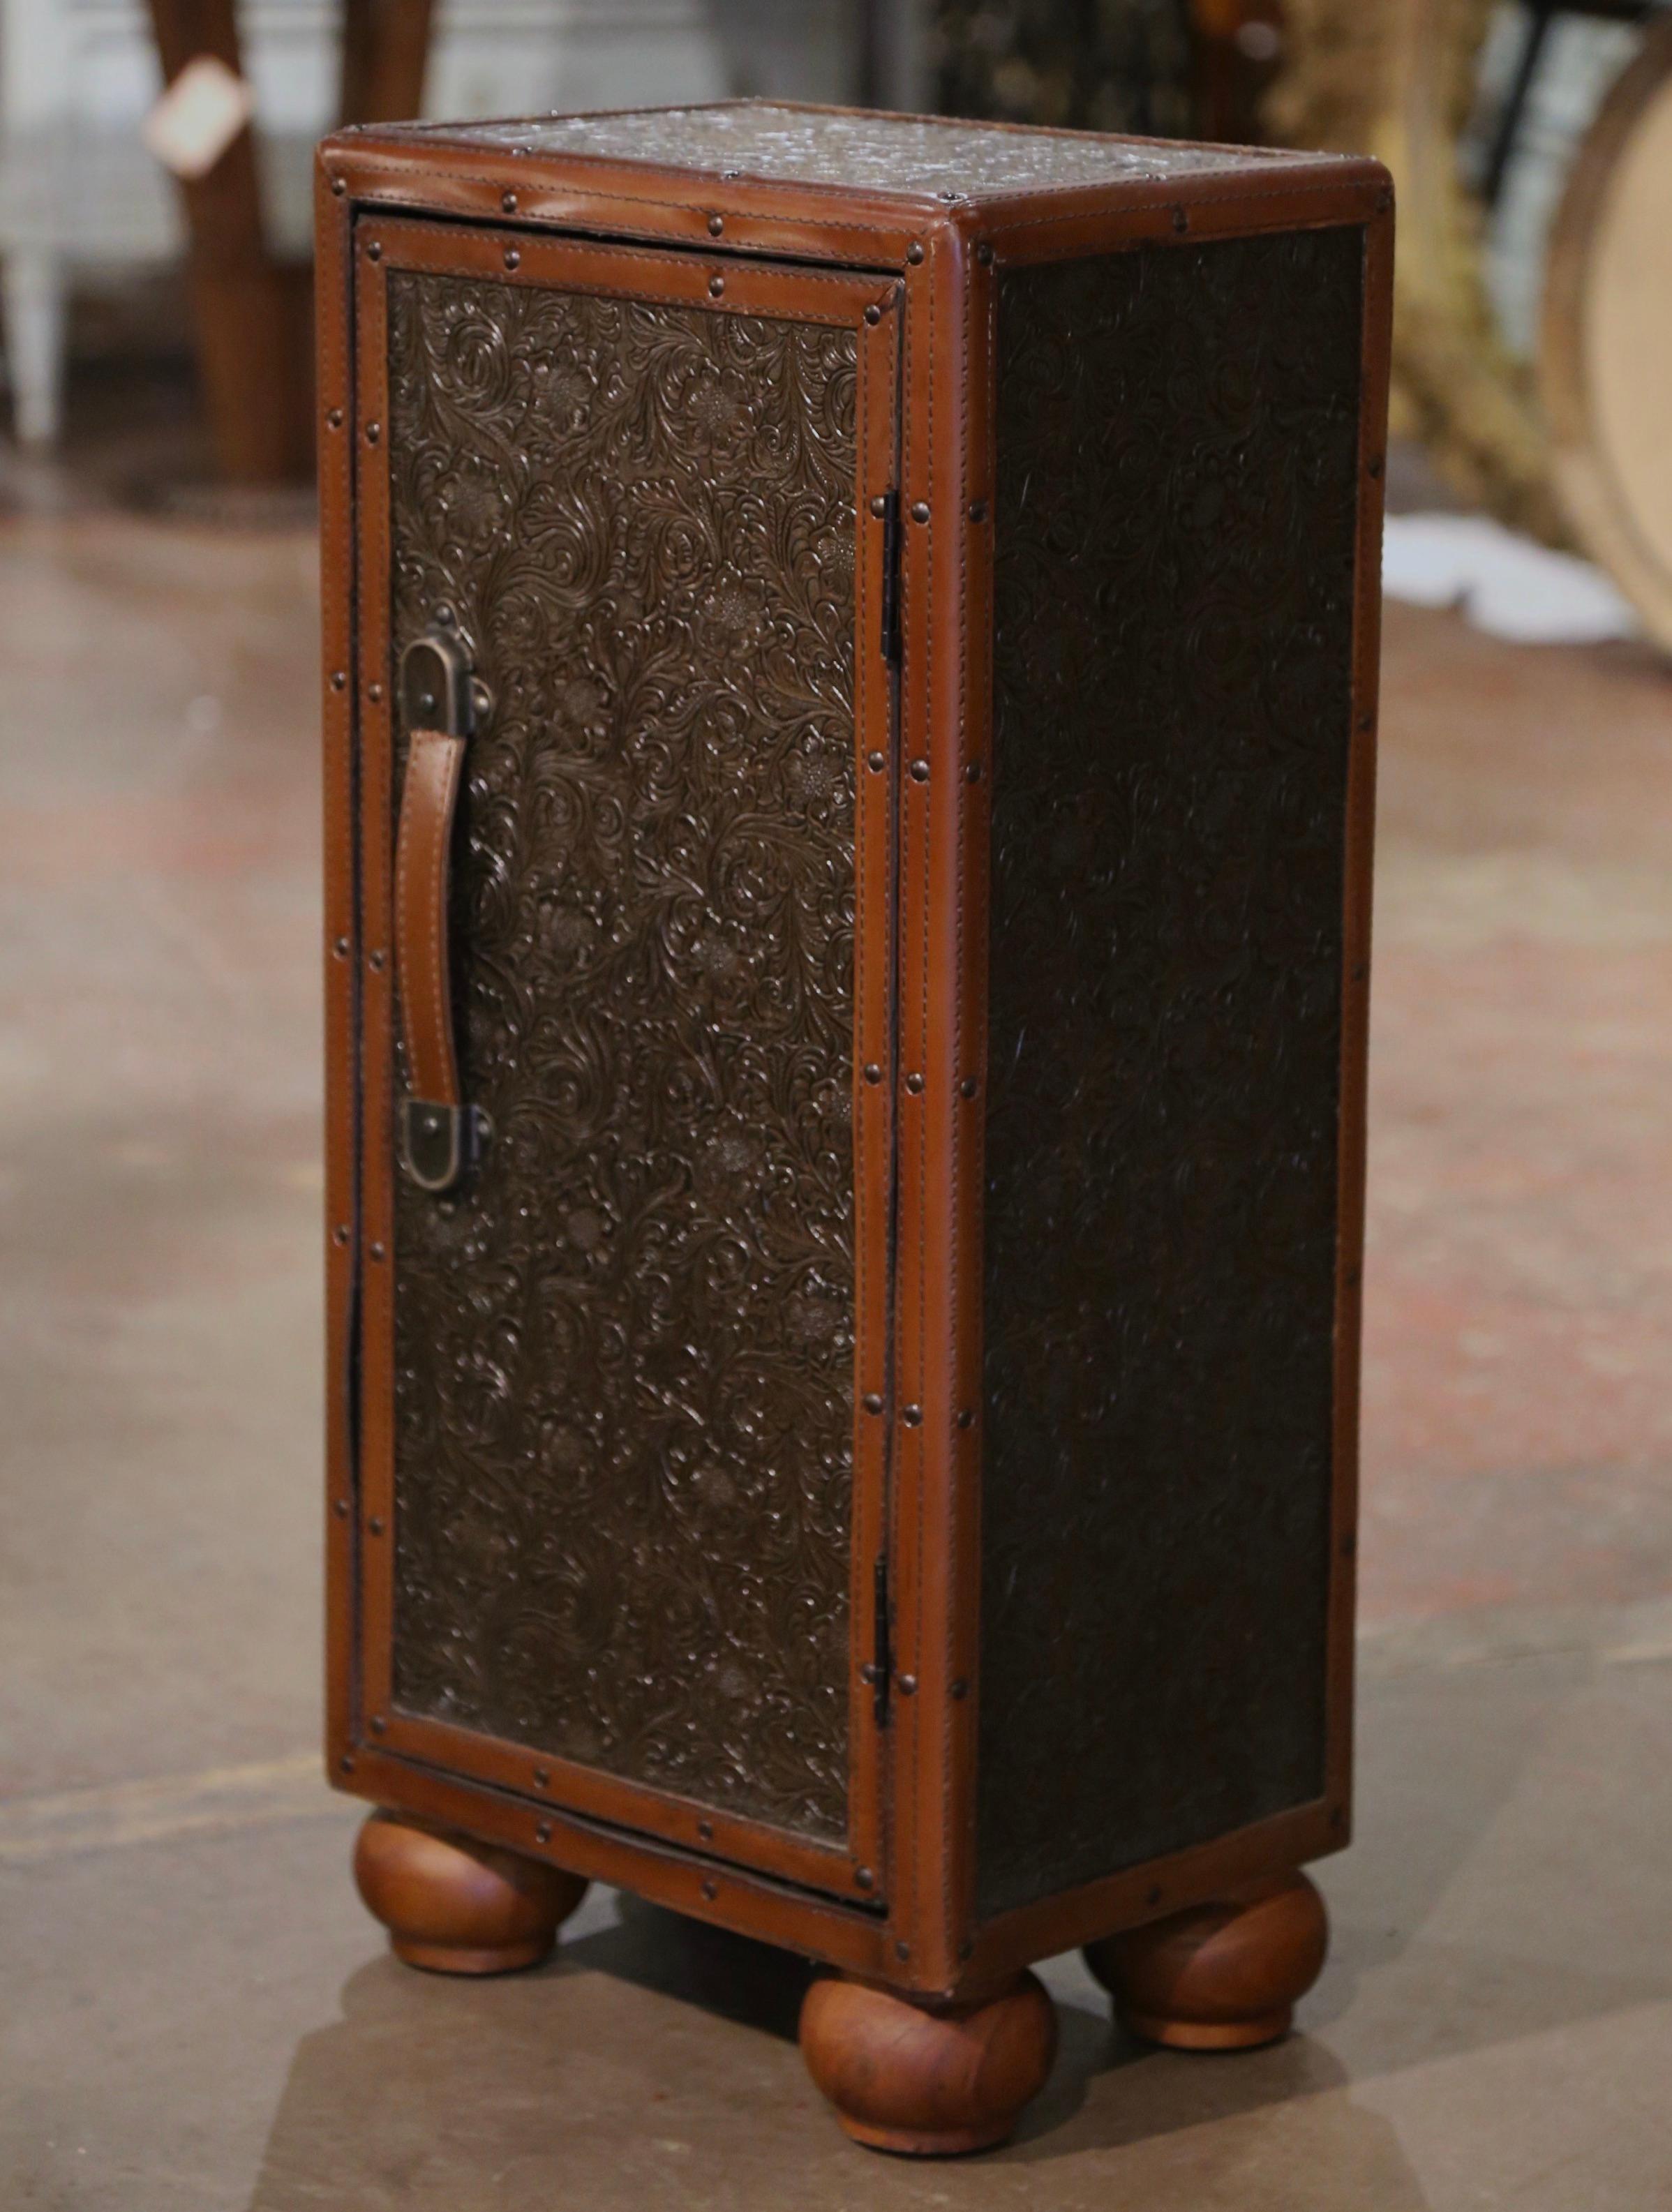 Fabriqué en Espagne vers 1990, ce petit meuble repose sur des pieds en chignon et est recouvert d'un cuir brun gaufré patiné, agrémenté de lanières de cuir dans chaque coin. En forme de valise ou de coffre, la pièce comporte une porte centrale